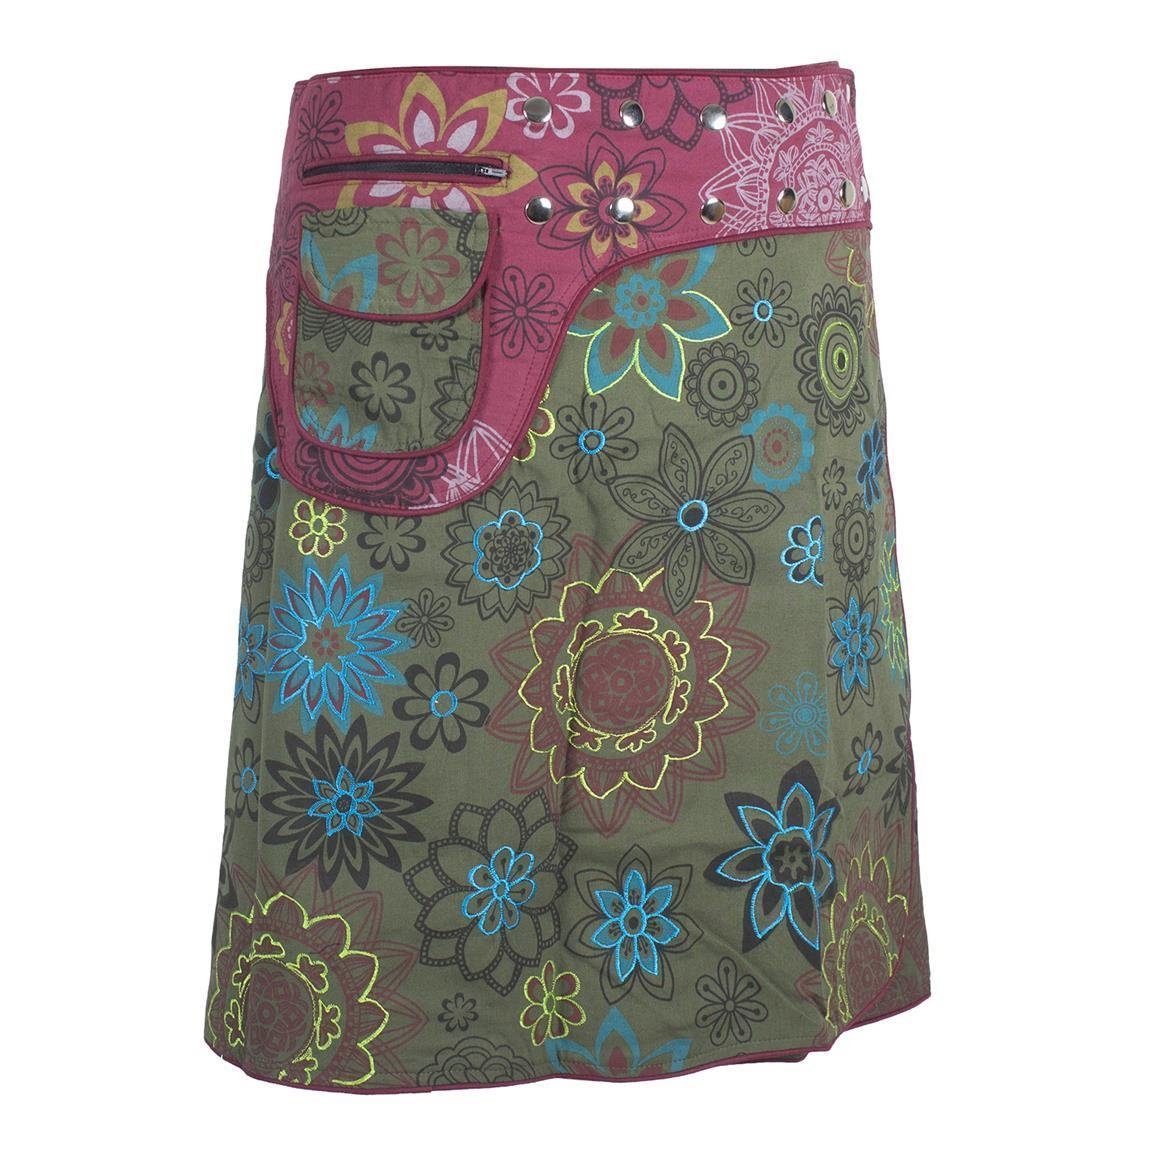 Bestickt Vishes Bedruckt Cacheur, Wrapper Bunt Wickelrock Style mit Sidebag Blumen A-Linie, Hippie Goa, olive-dunkelrot